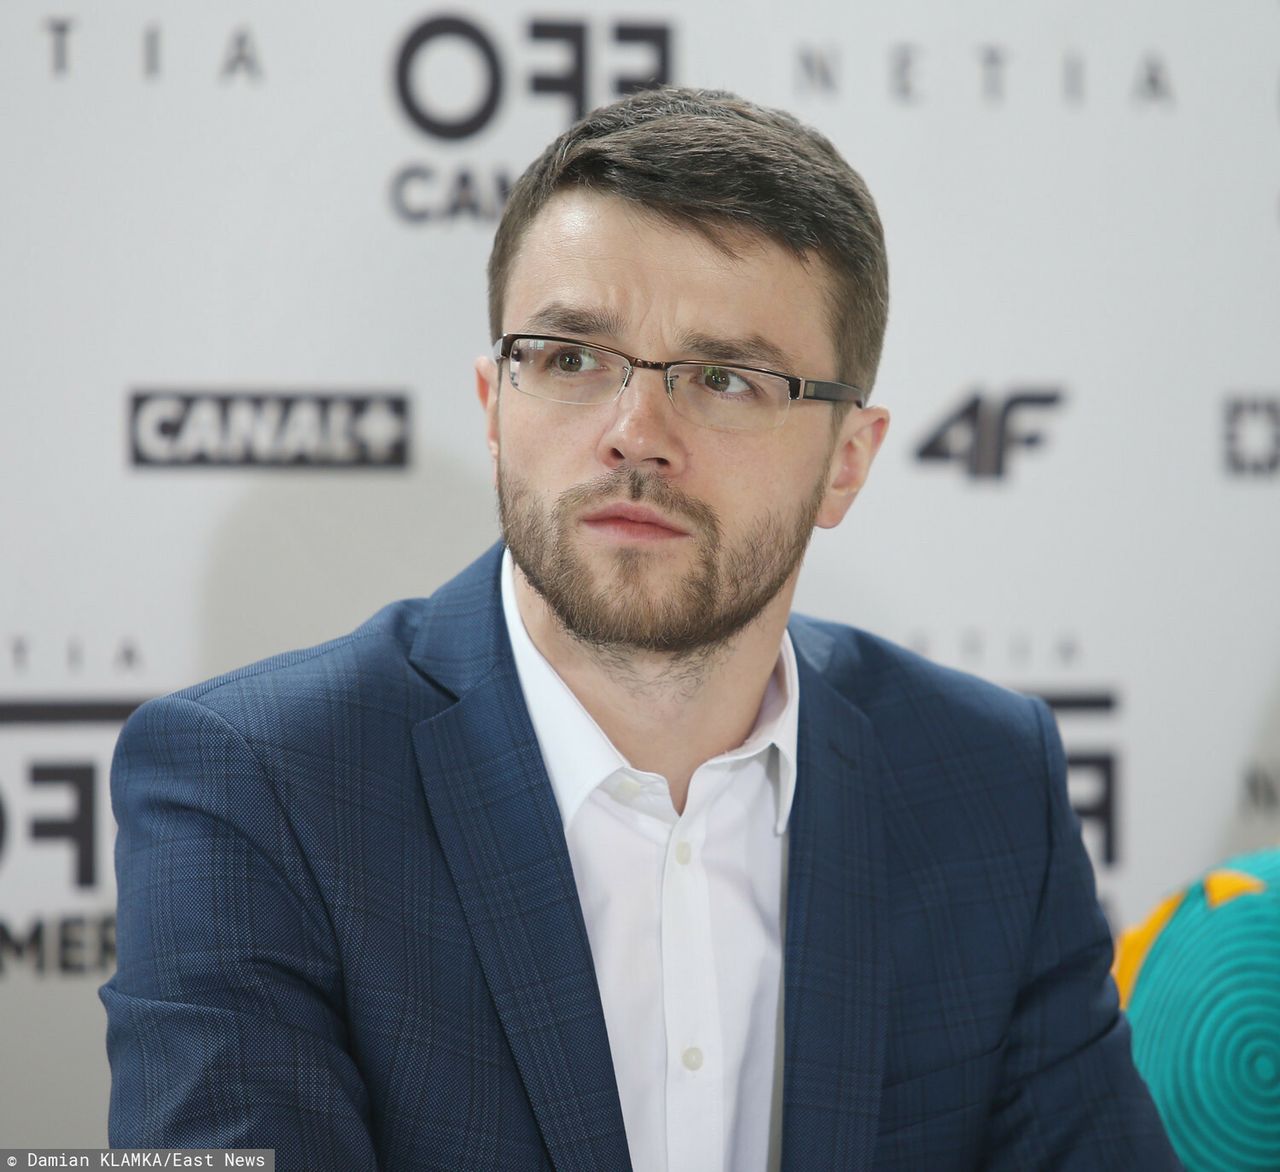 Szymon Miszczak